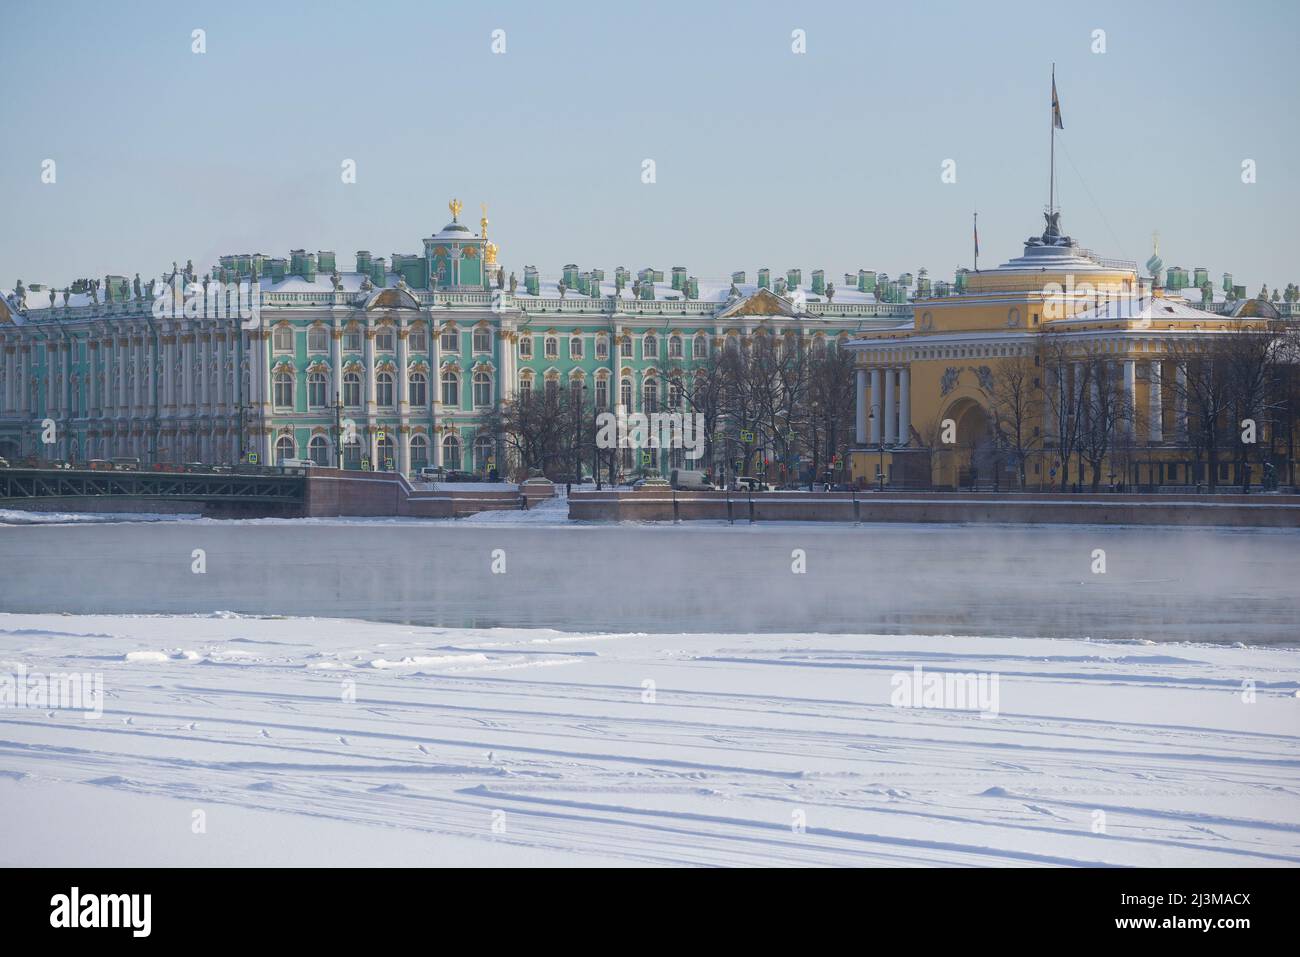 SAN PETERSBURGO, RUSIA - 15 DE FEBRERO de 2021: Palacio de Invierno y Almirantazgo en el paisaje urbano en la mañana de febrero Foto de stock